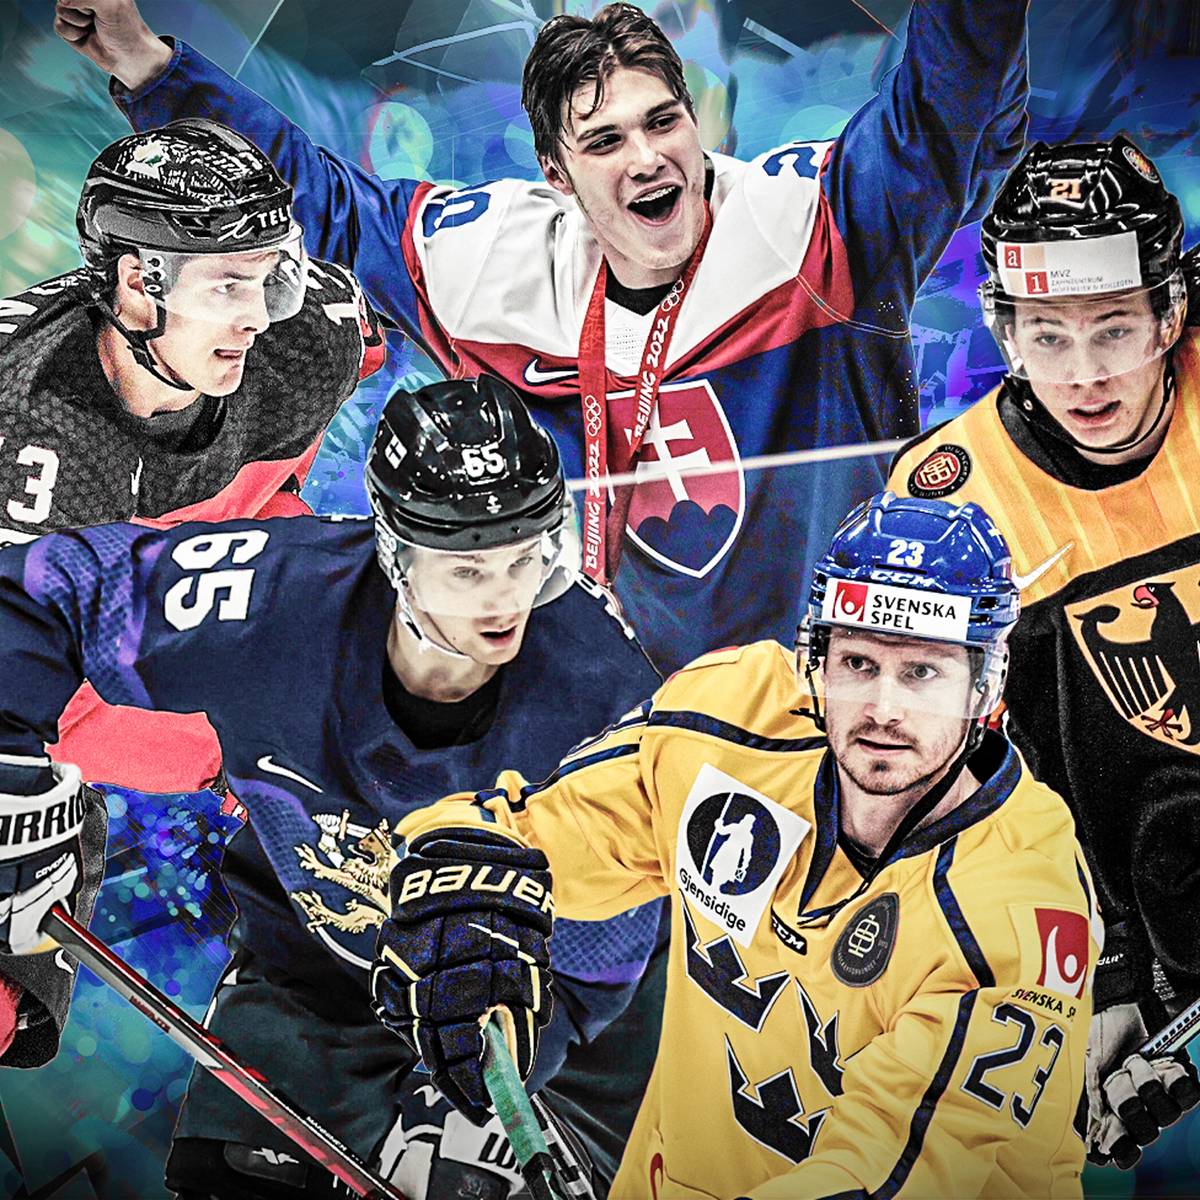  Eishockey Hintergrundbild 1200x1200. Eishockey WM 2022: Wer Ist Favorit Auf WM Sieg? DEB Team, Kanada, Schweden Oder Finnland?